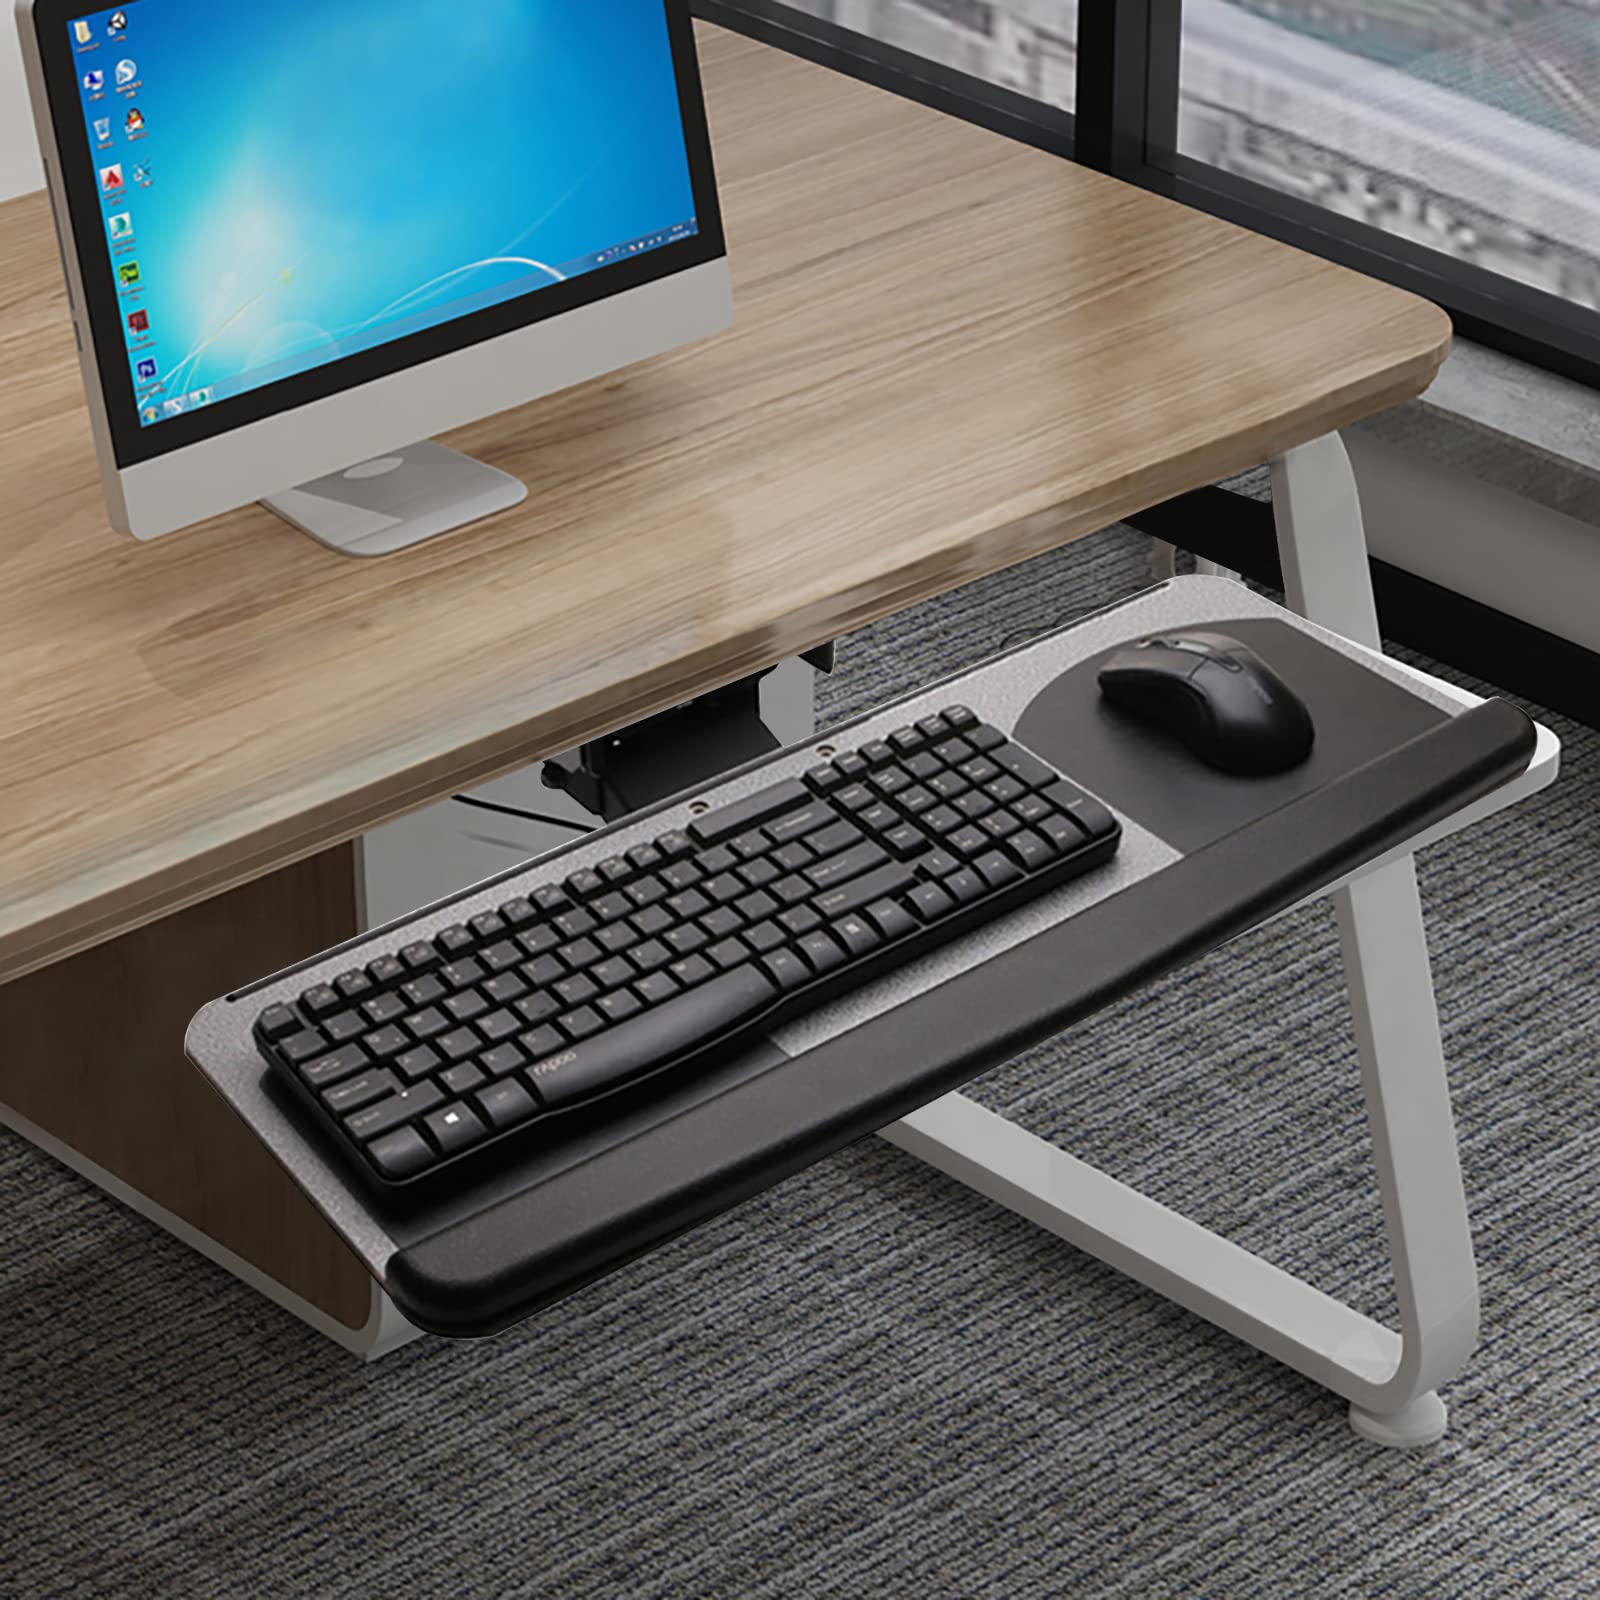 Support de clavier de bureau - Support ergonomique pour ordinateur portable